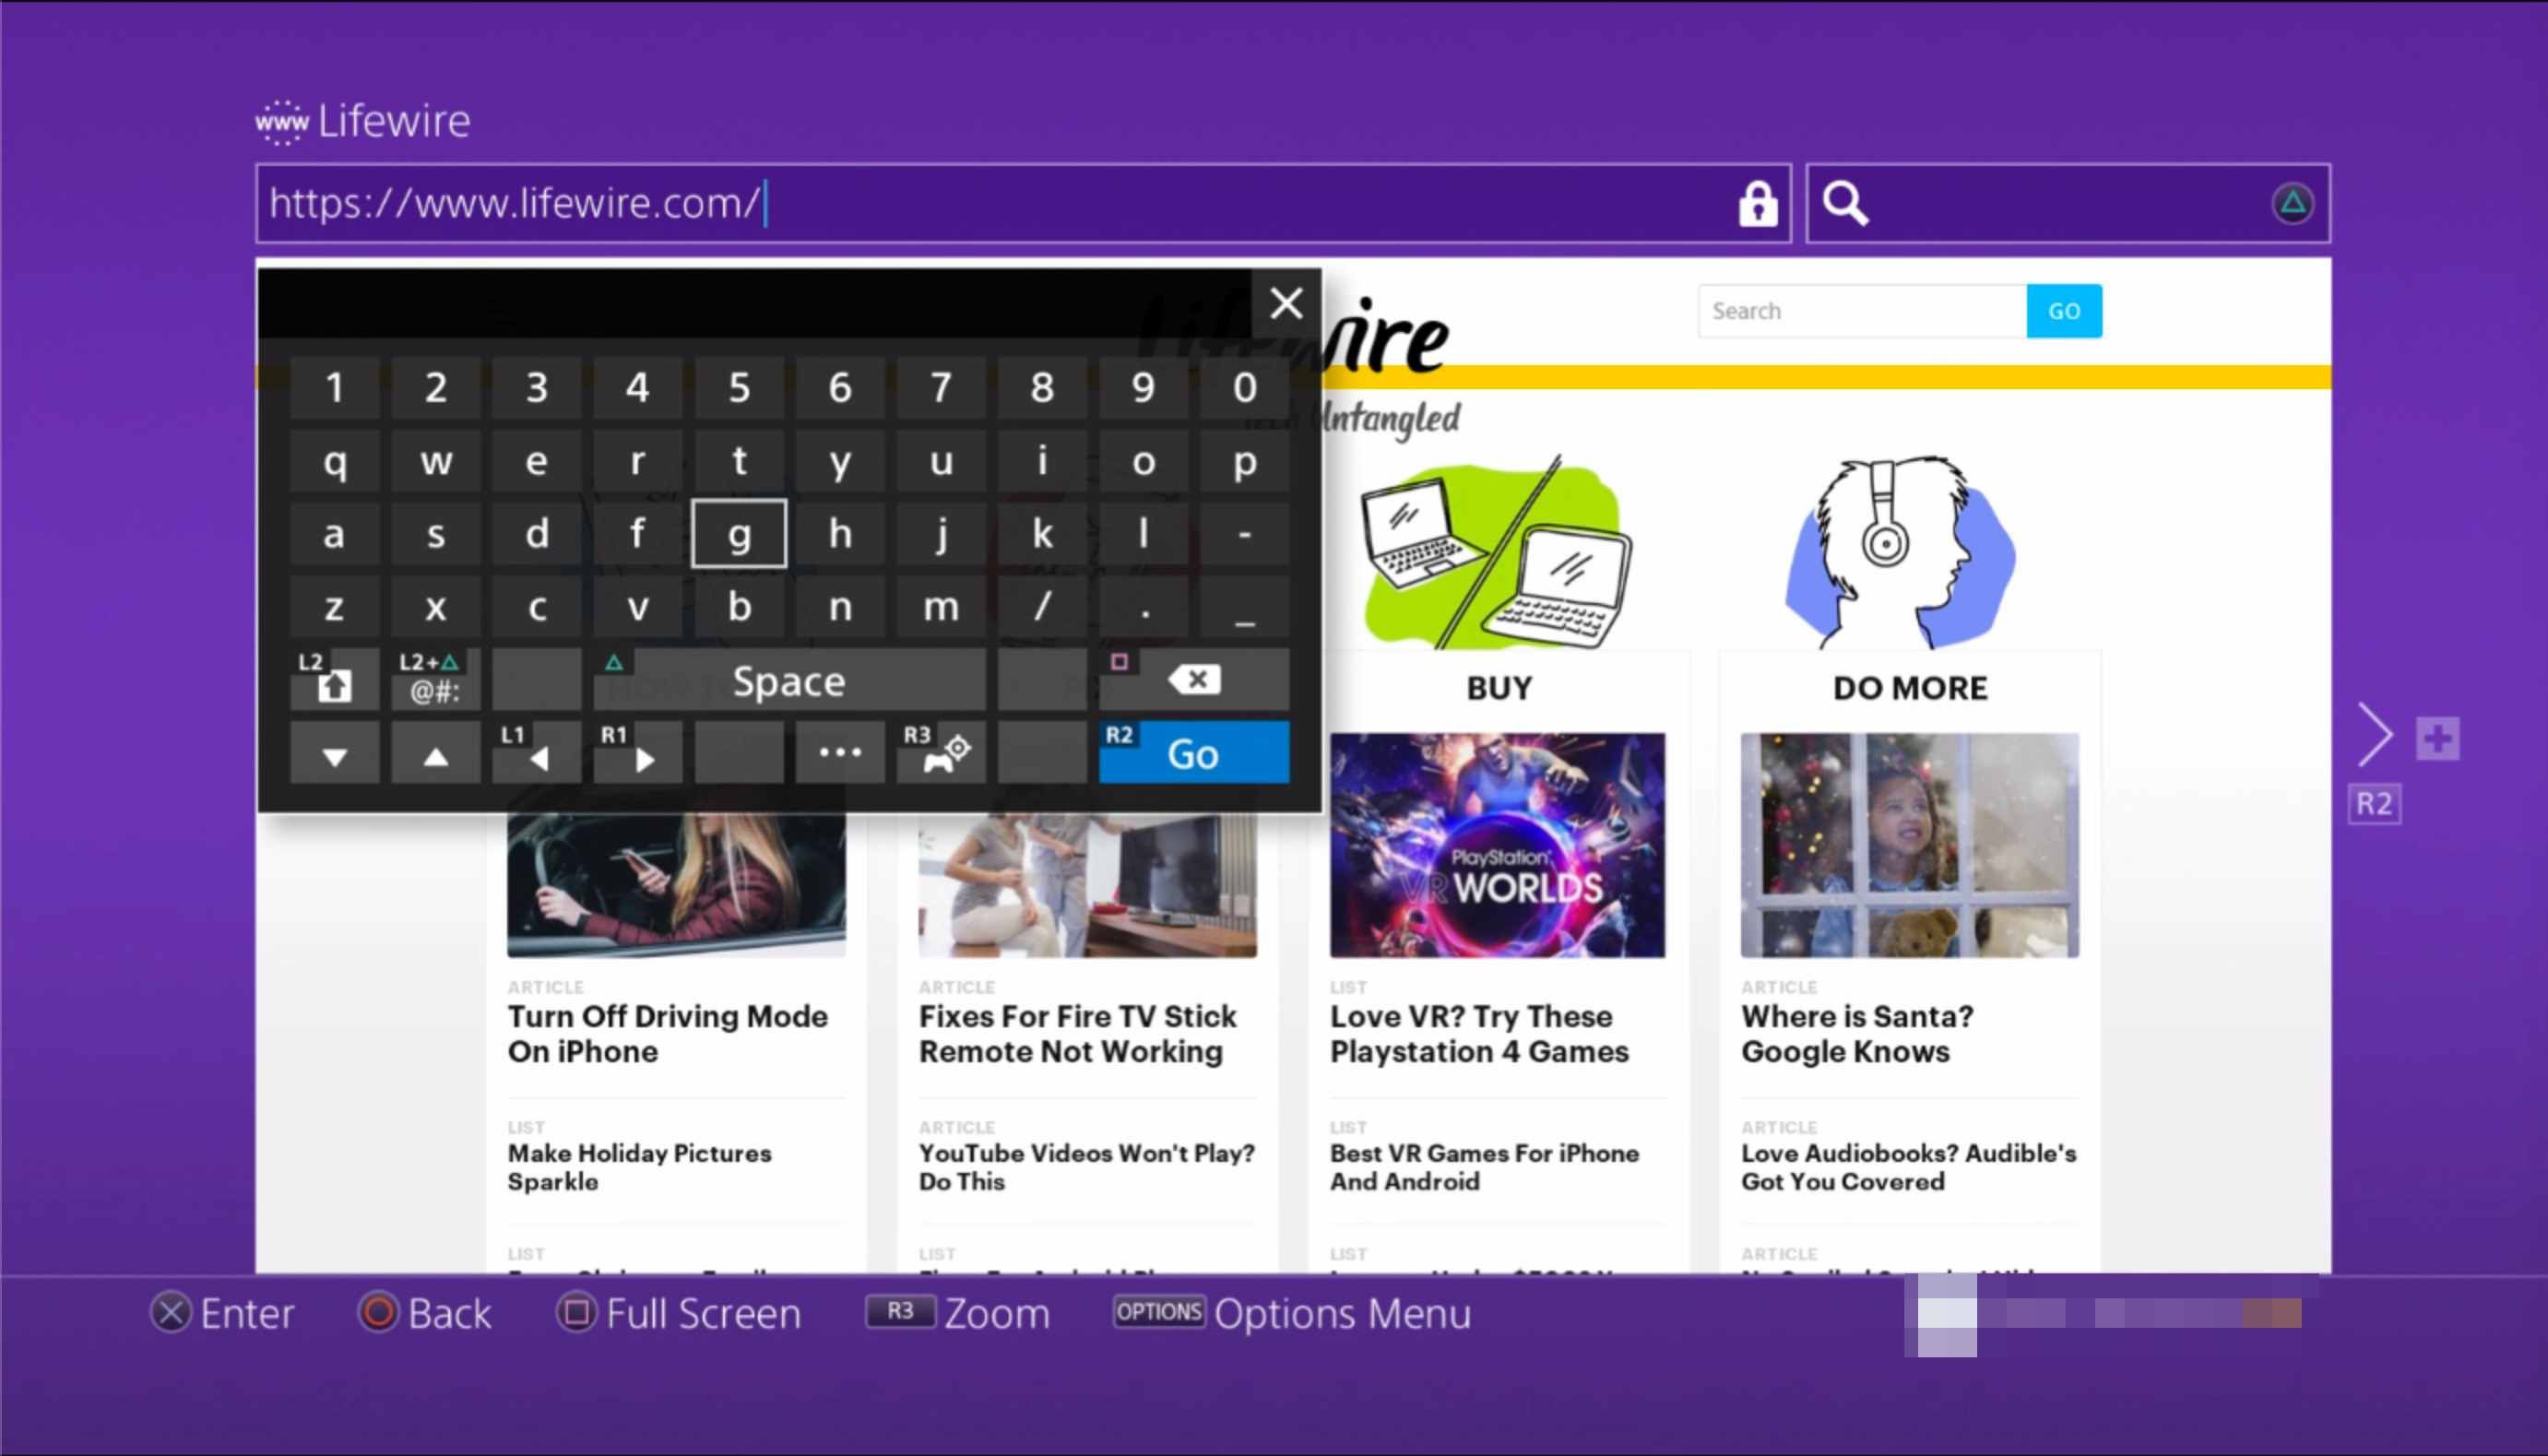 Веб-браузер PS4, загружающий lifewire.com с экранной клавиатуры